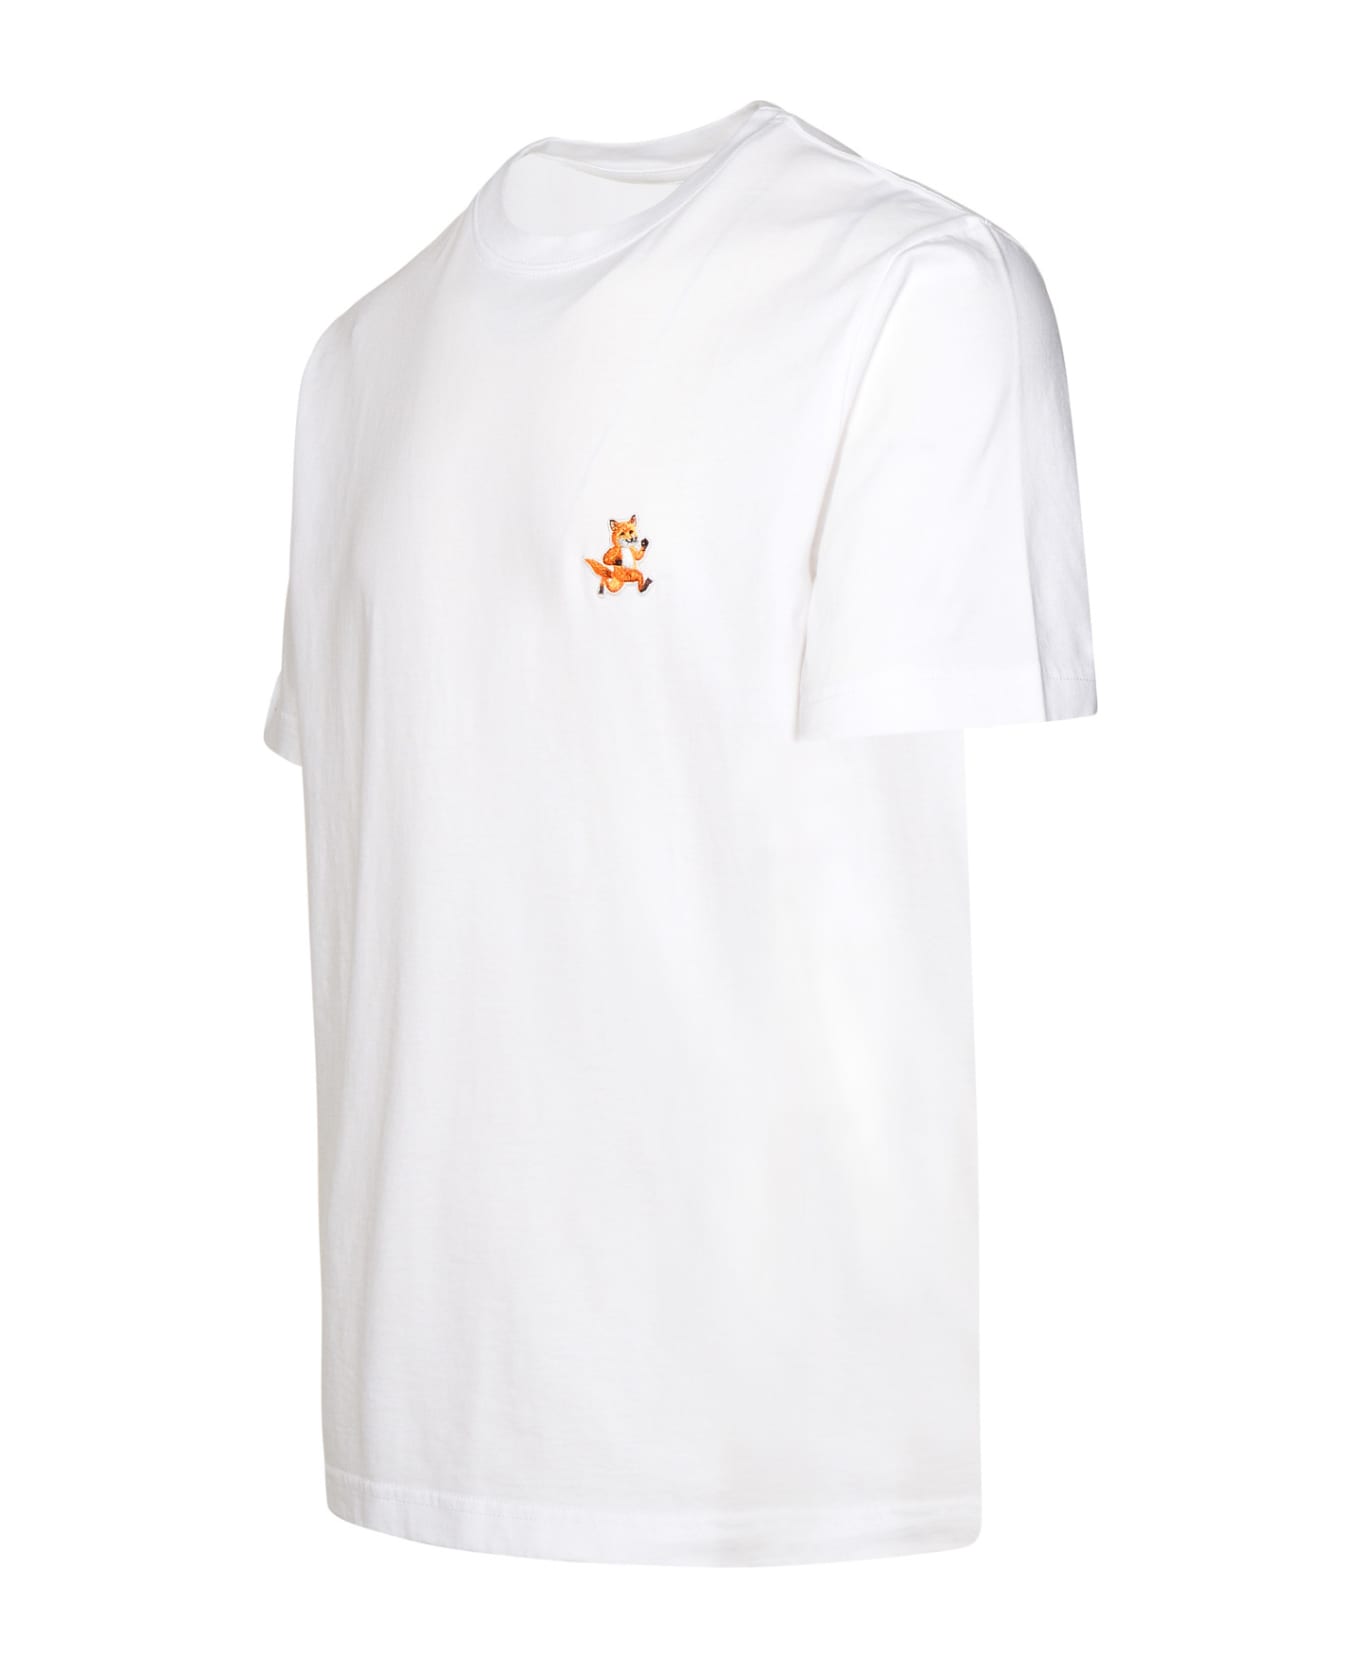 Maison Kitsuné White Cotton T-shirt - White シャツ